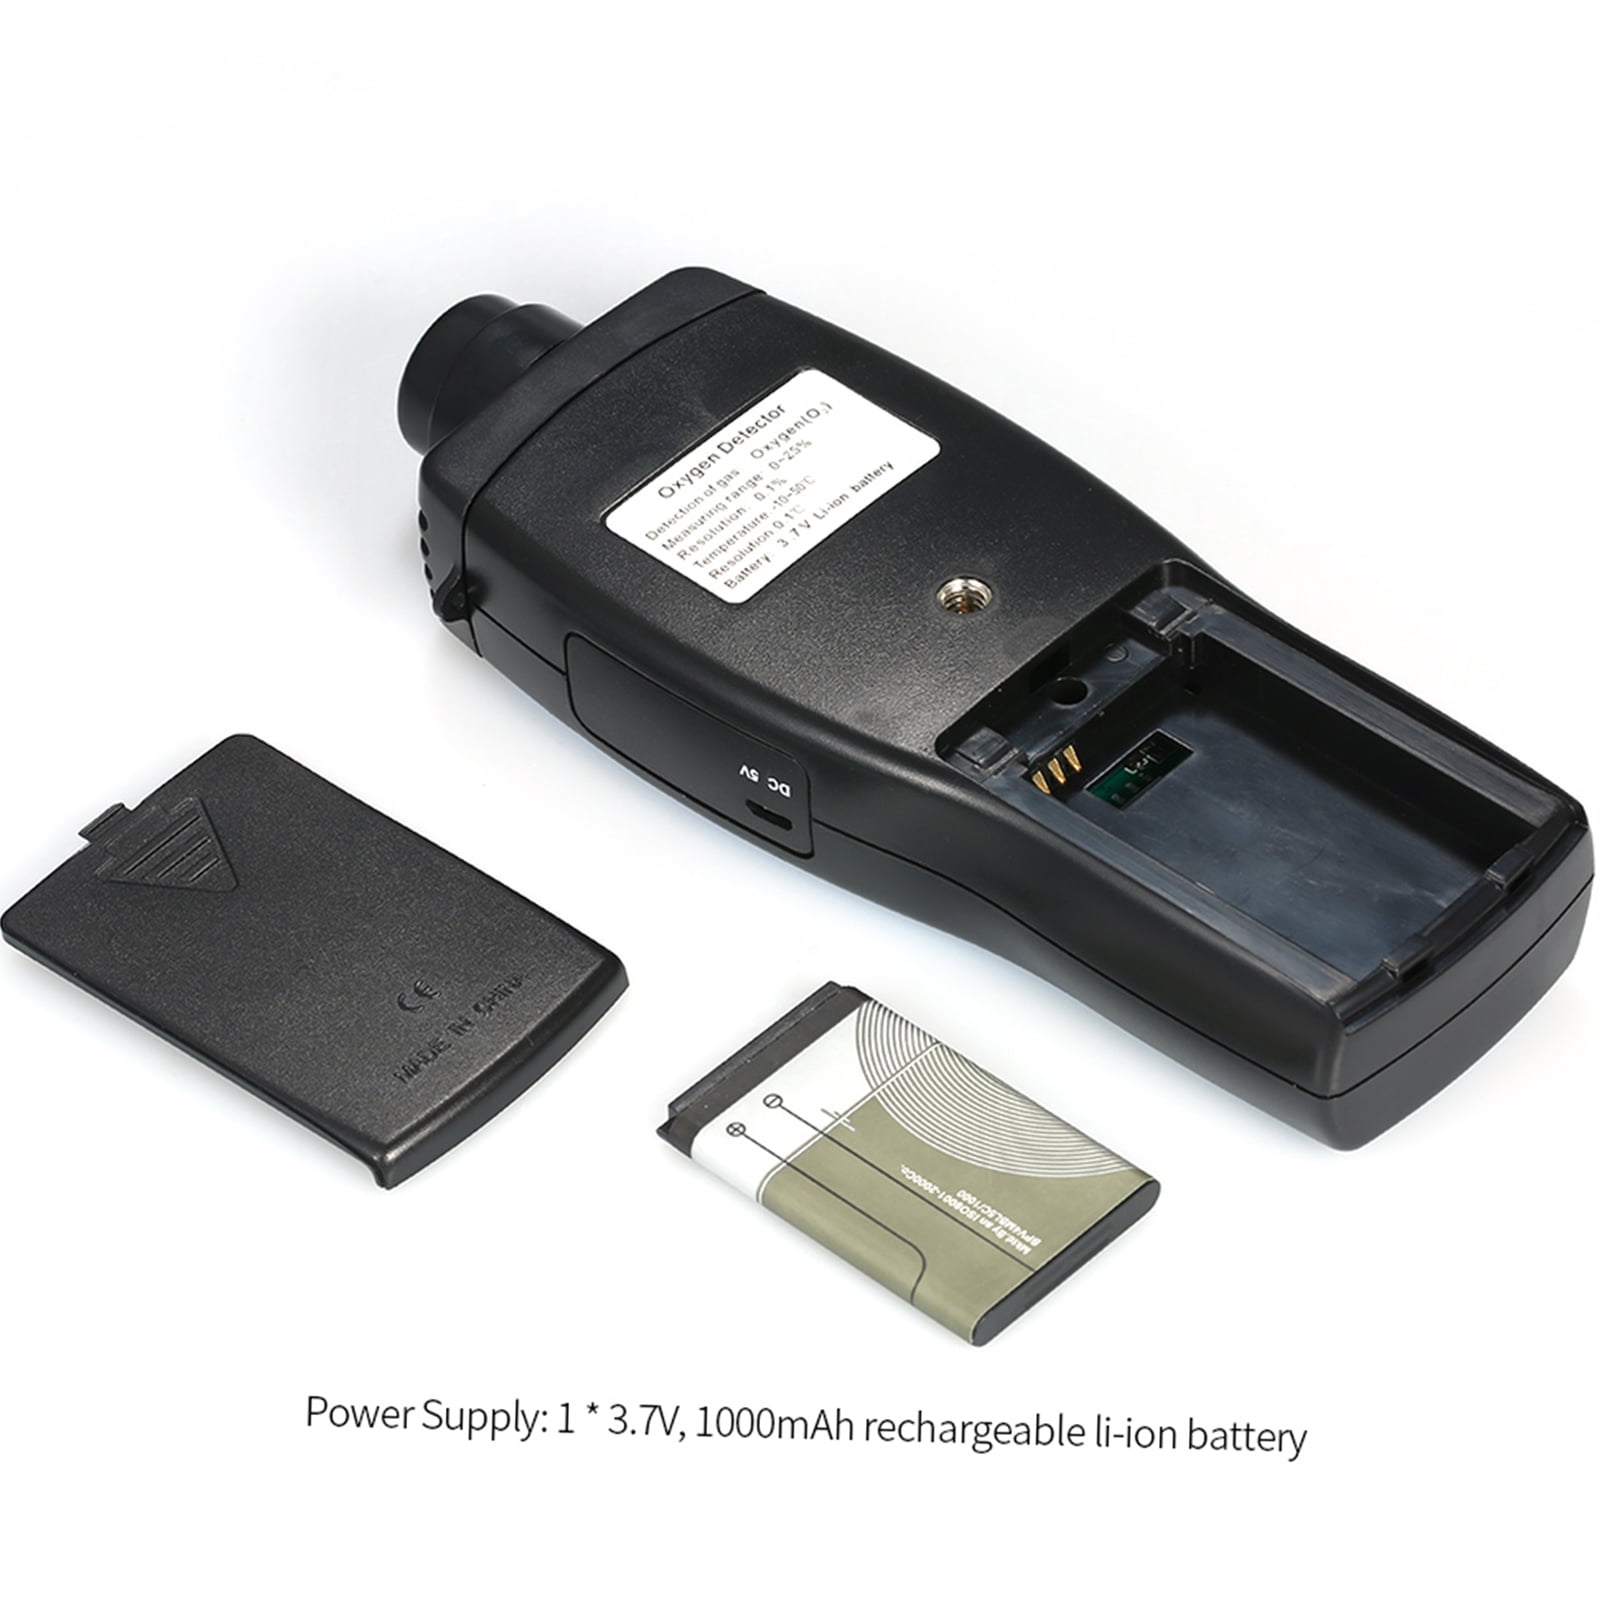 Digital Oxygen Meter Detector SMART SENSOR Portable O2 Gas Tester Monitor N8V9 